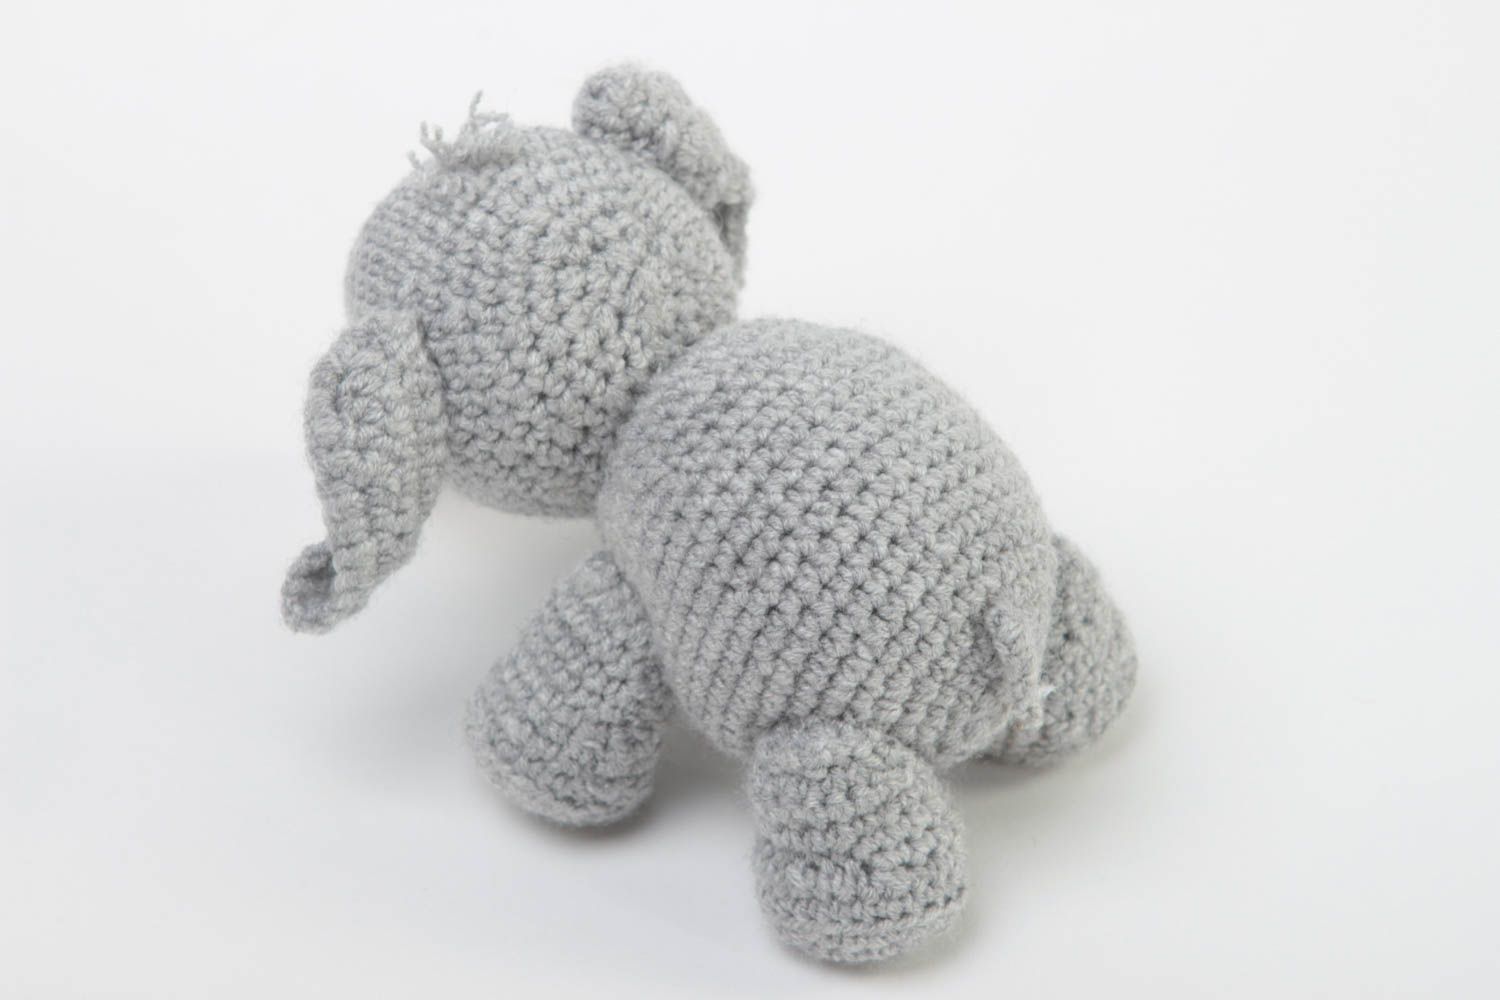 Handmade Elefant Plüschtier weiches Kuscheltier Plüschtier Elefant grau schön foto 4